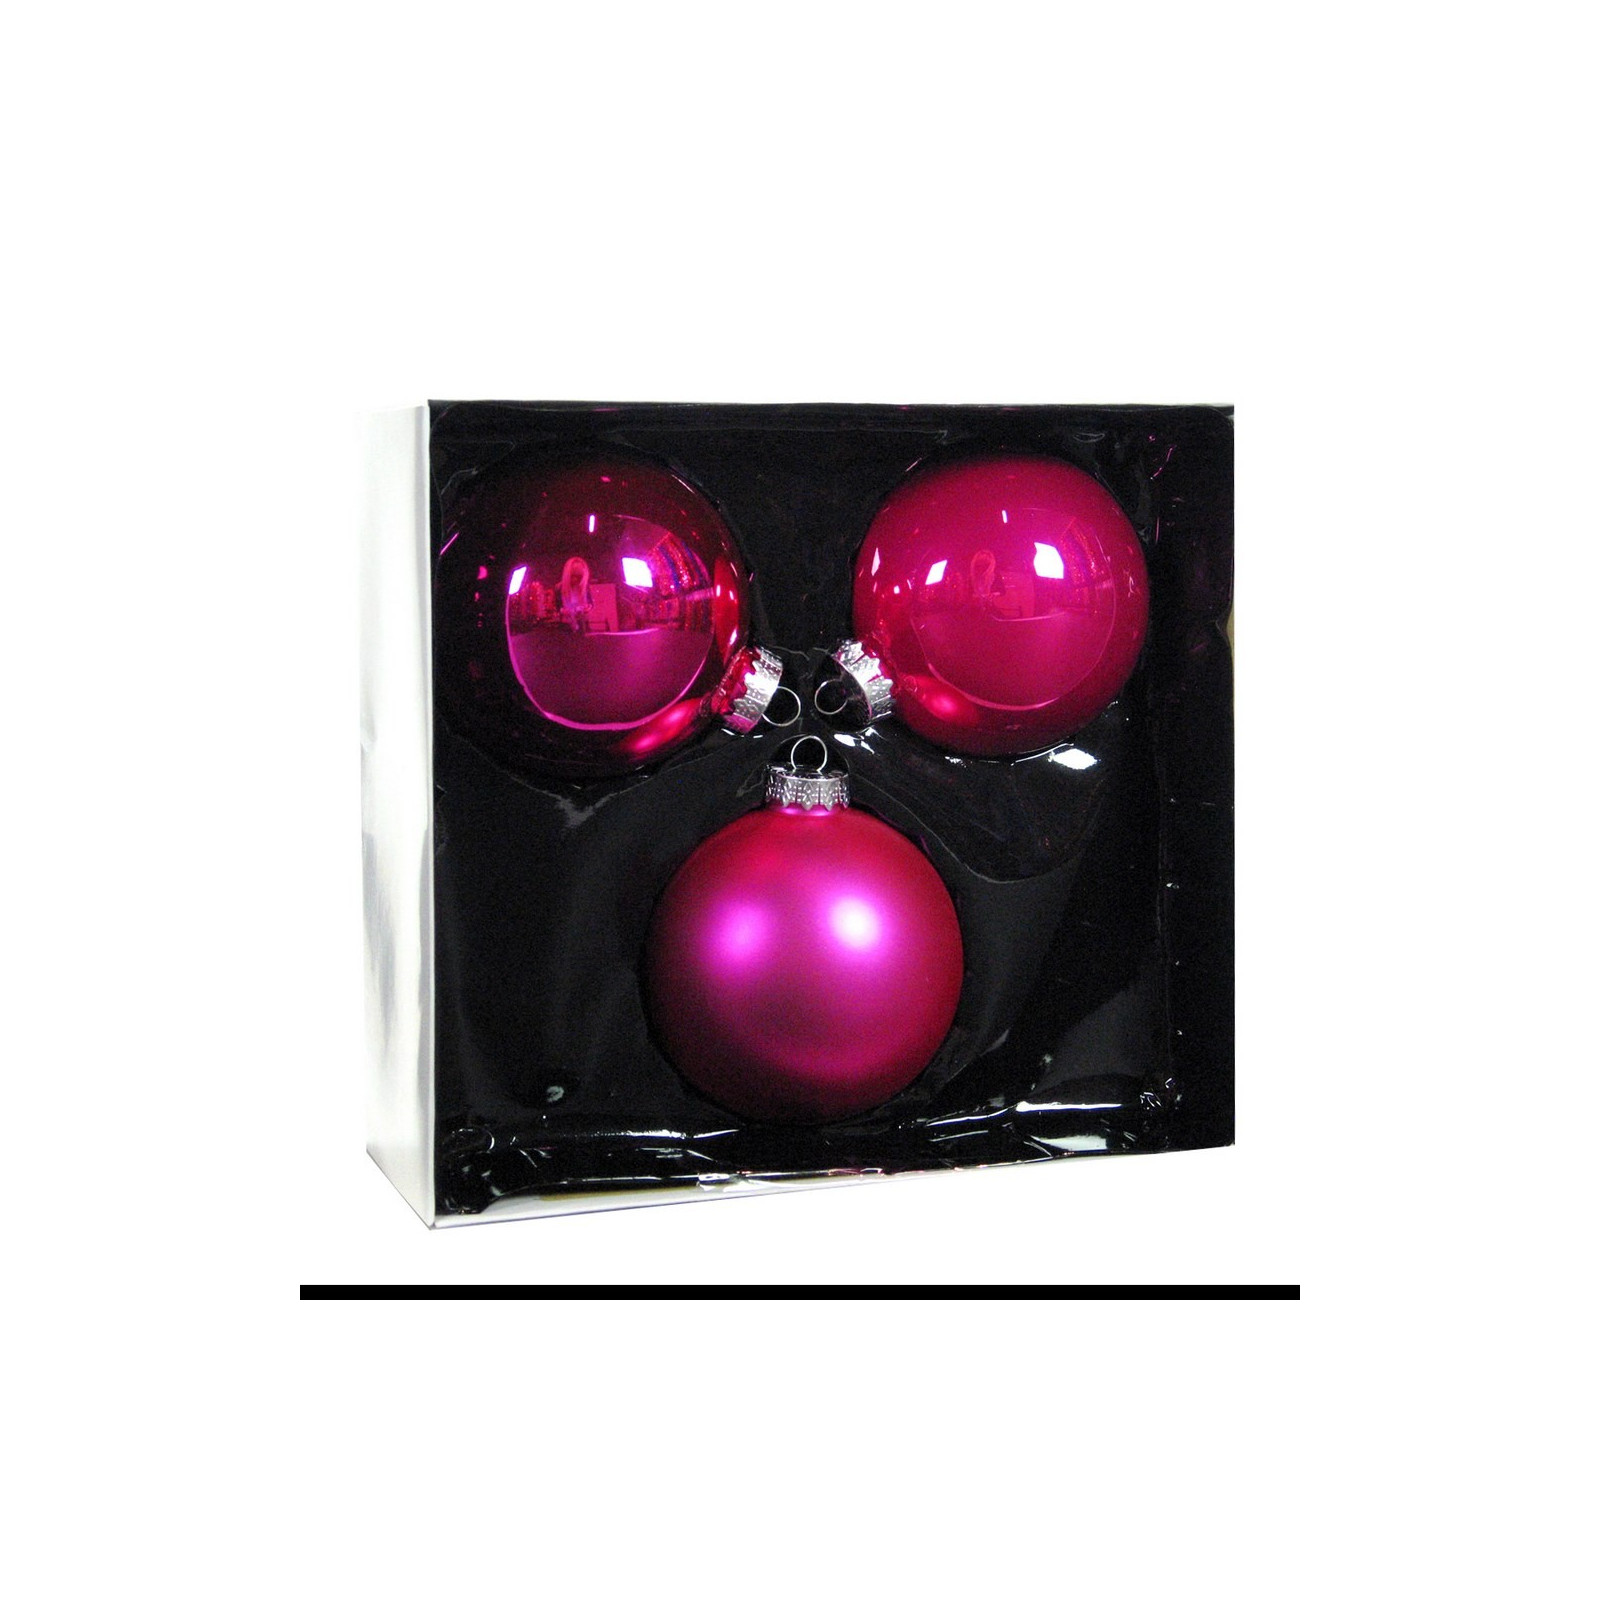 Bola de cristal rosa lisa fosca s 3 de 10 cm